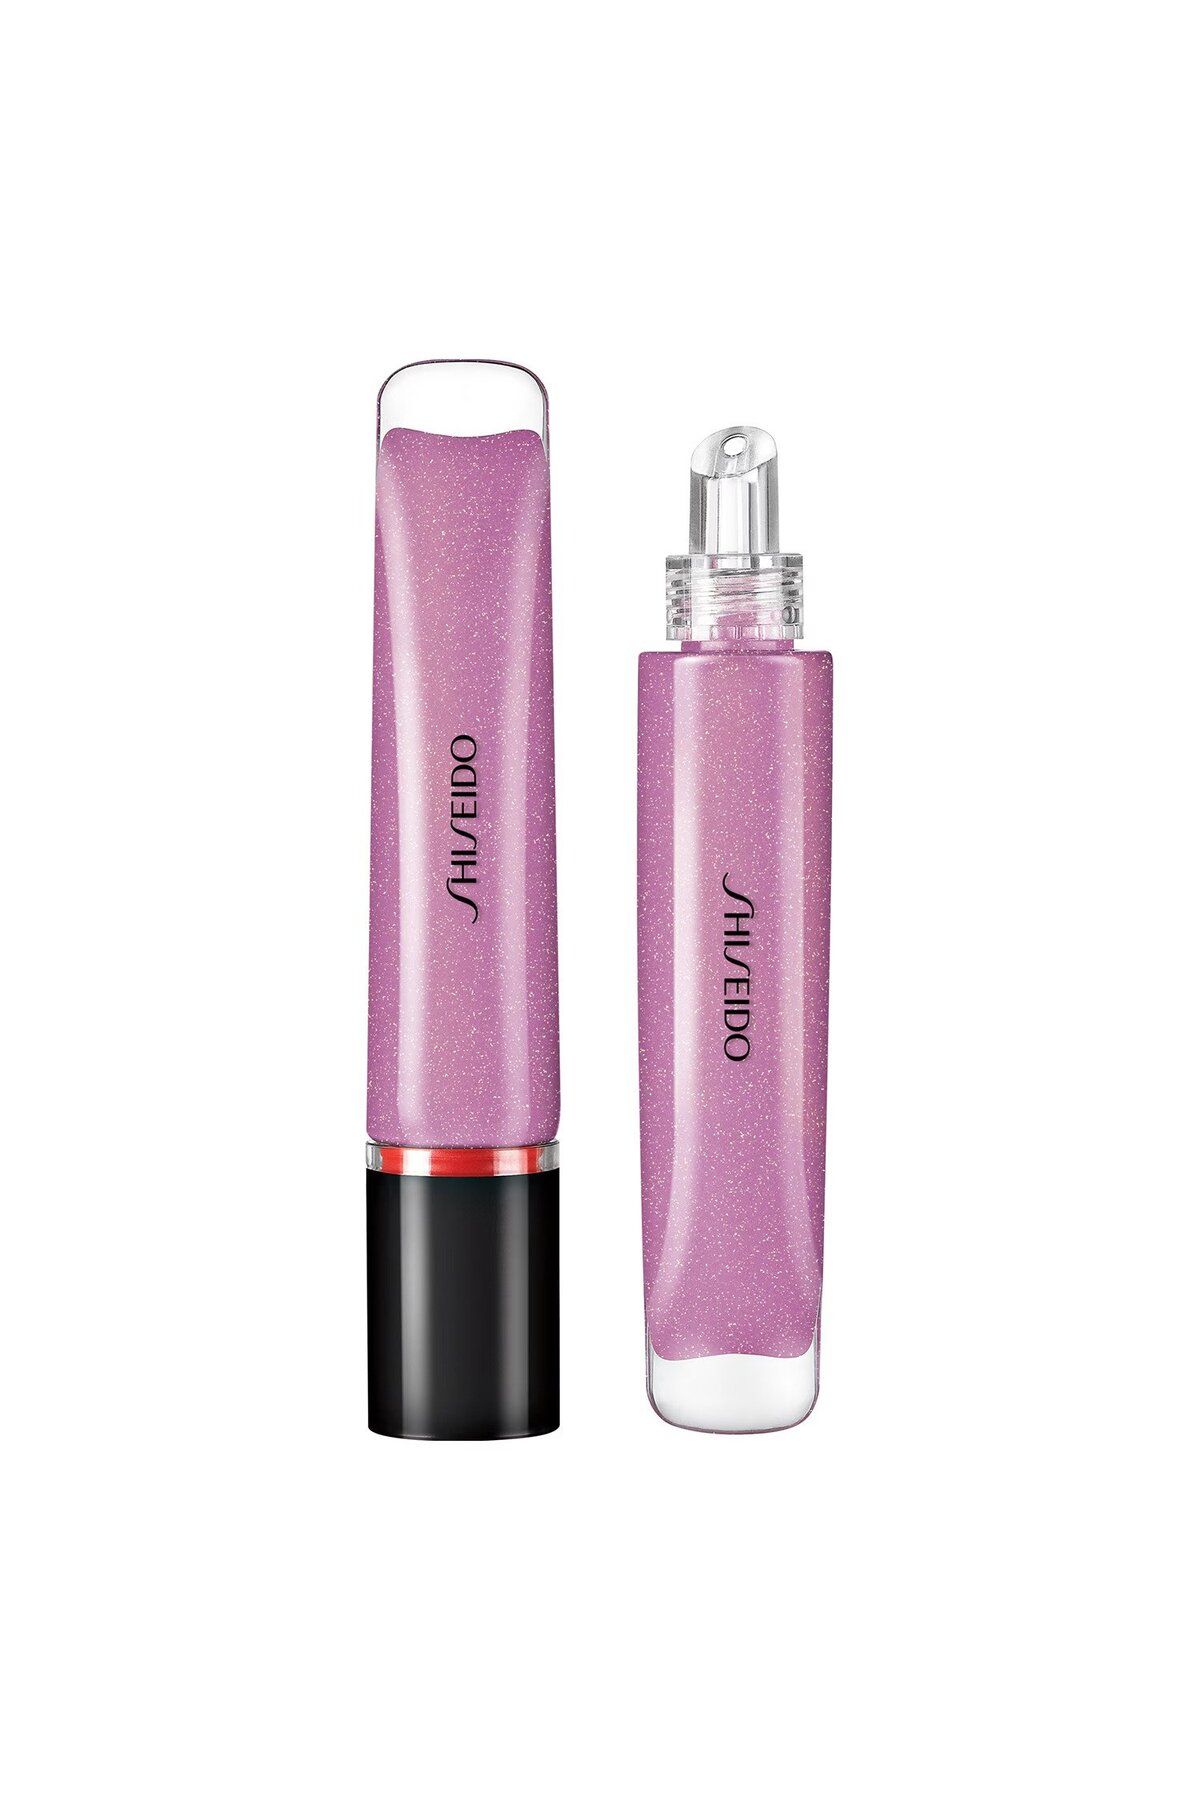 Shiseido Shimmer GelGloss - 12 Saate Kadar Nemlendiren Shea Yağı İçerikli Işıltılı Dudak Parlatıcısı 9 ml